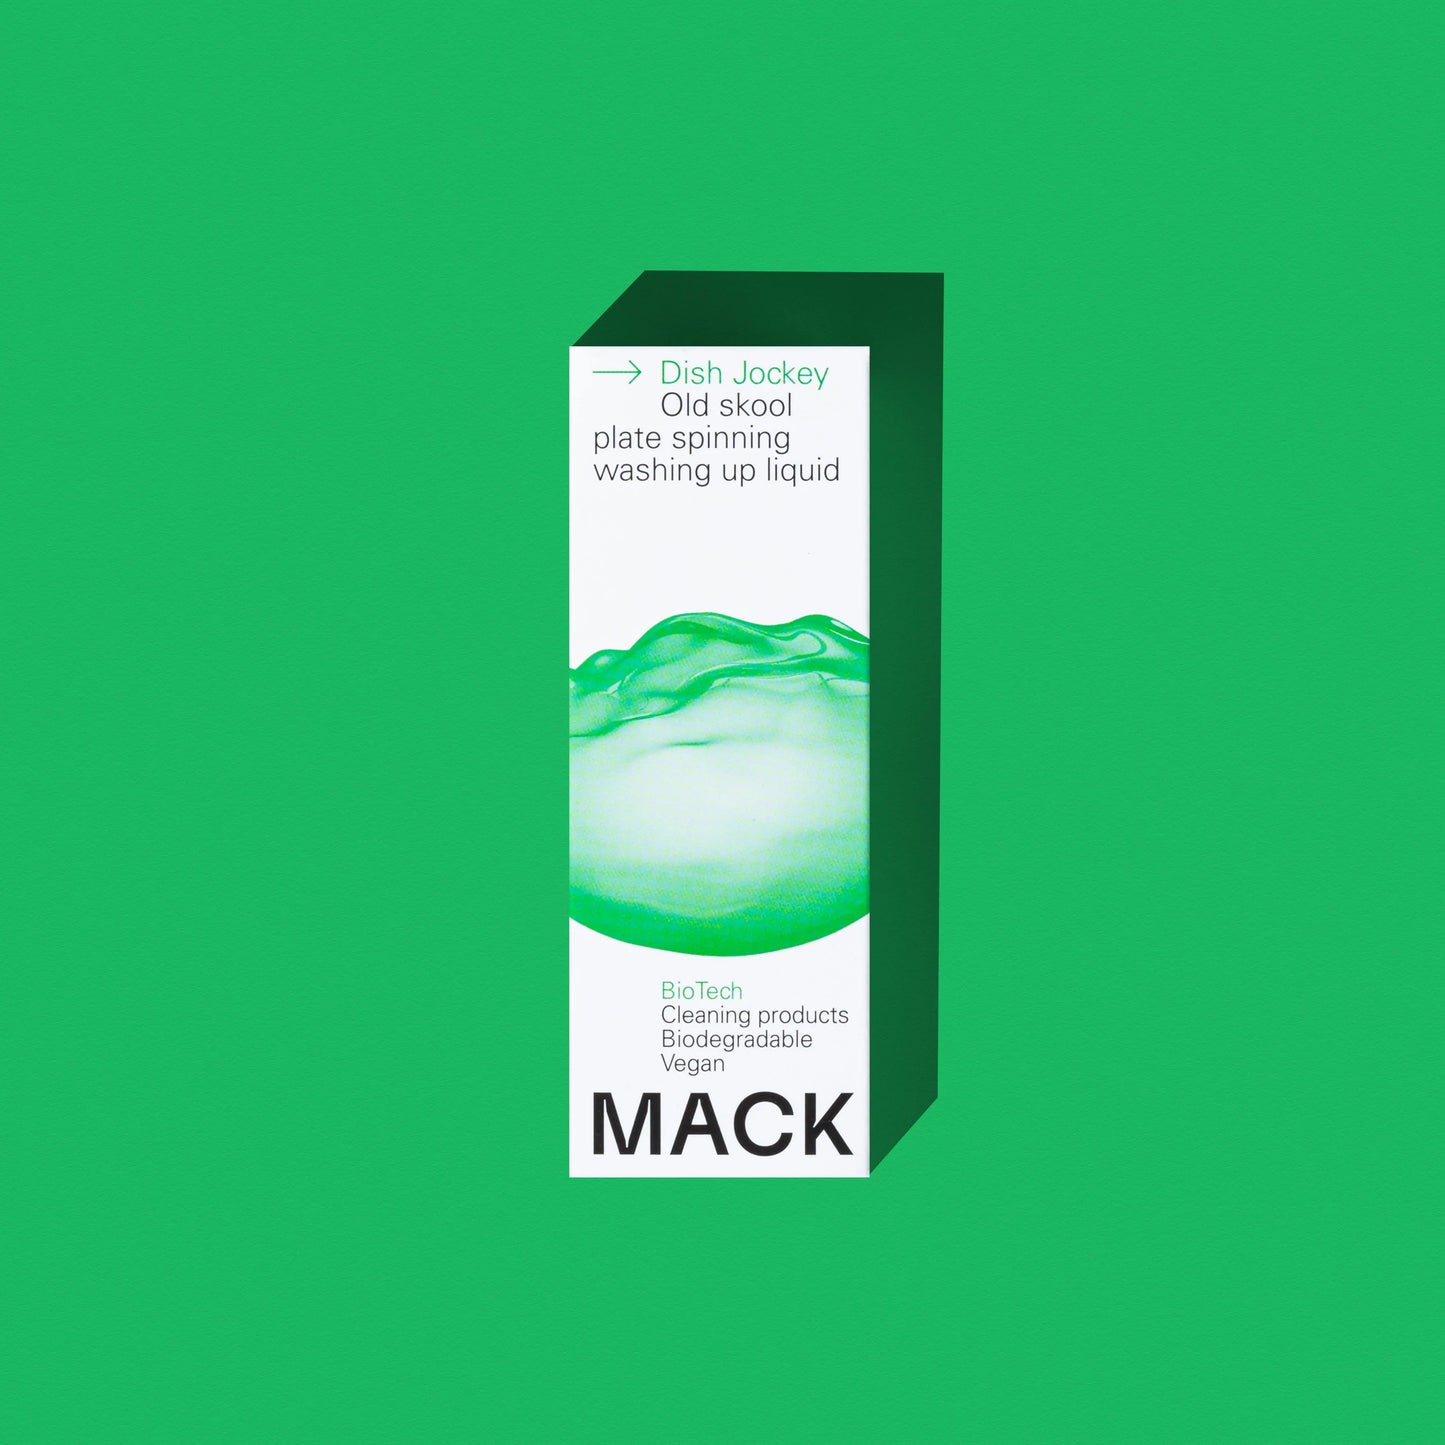 MACK Dish Jockey BioPod - washing up liquid